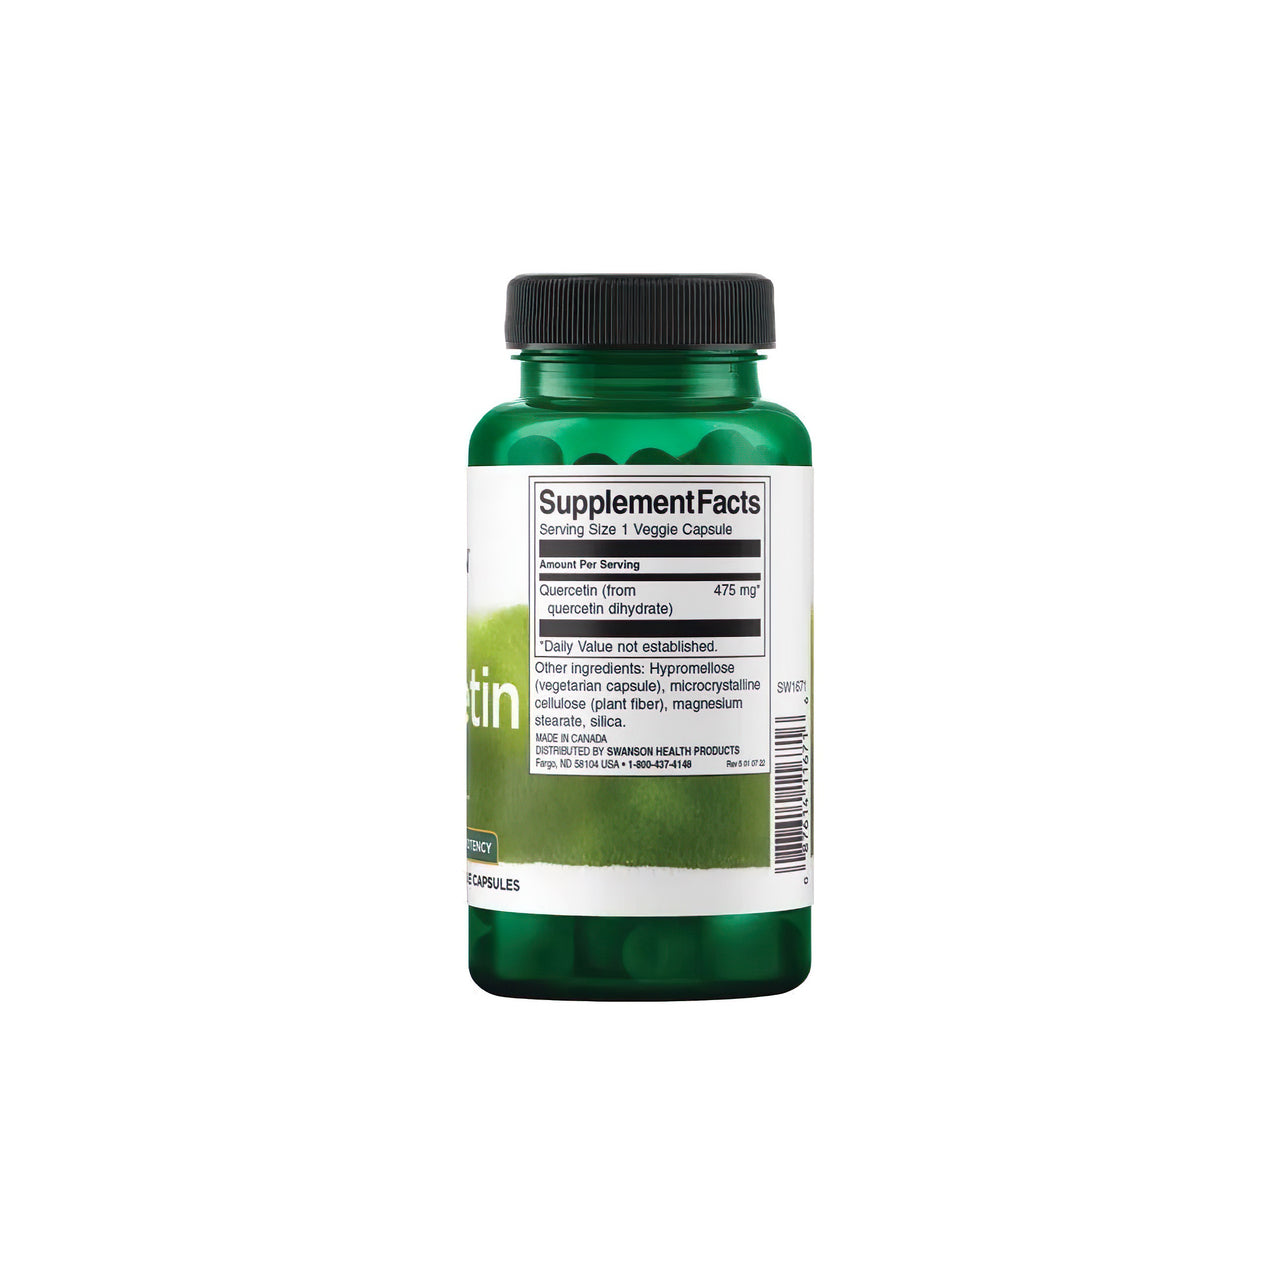 Eine Flasche mit dem antioxidantienreichen Quercetin 475 mg 60 vcaps von Swanson auf weißem Hintergrund, das sich positiv auf das Immunsystem und die Blutgefäße auswirkt.